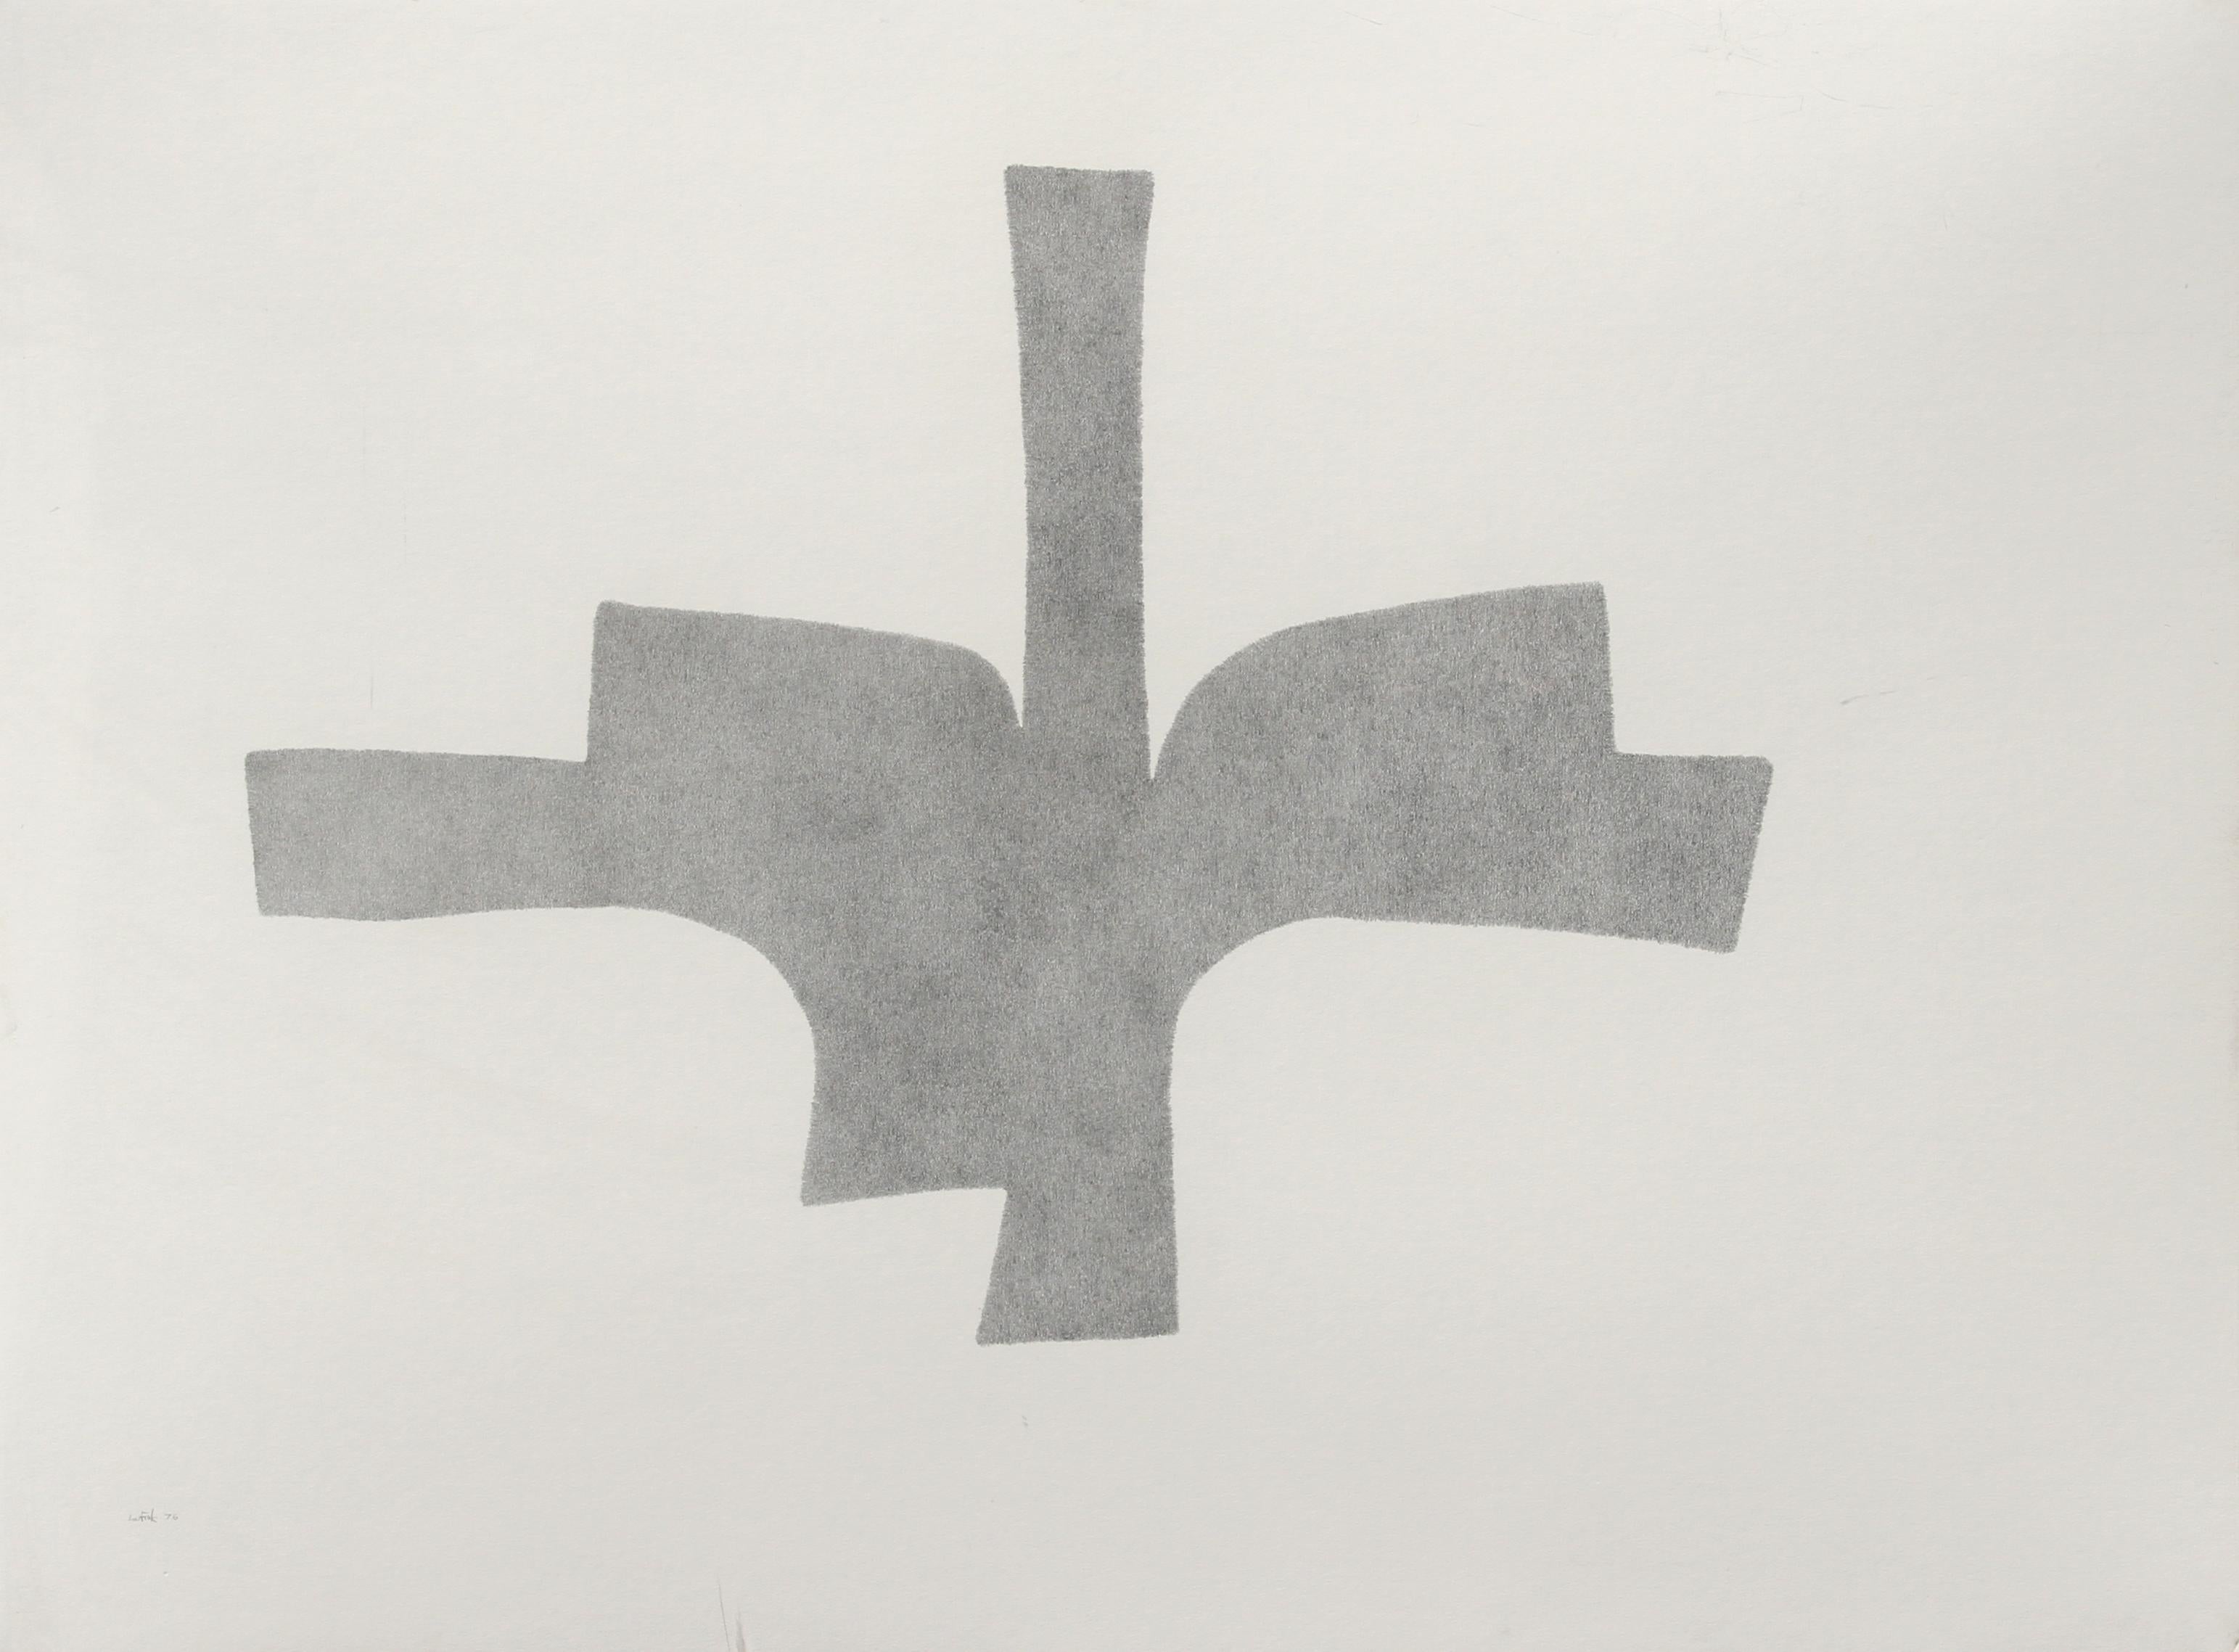 Artiste : Lou Fink, américain (1925 - 1980)
Titre : Condor
Année : 1976
Médium : Crayon sur papier, signé et daté à gauche.
Taille : 30 in. x 40 in. (76,2 cm x 50,8 cm)